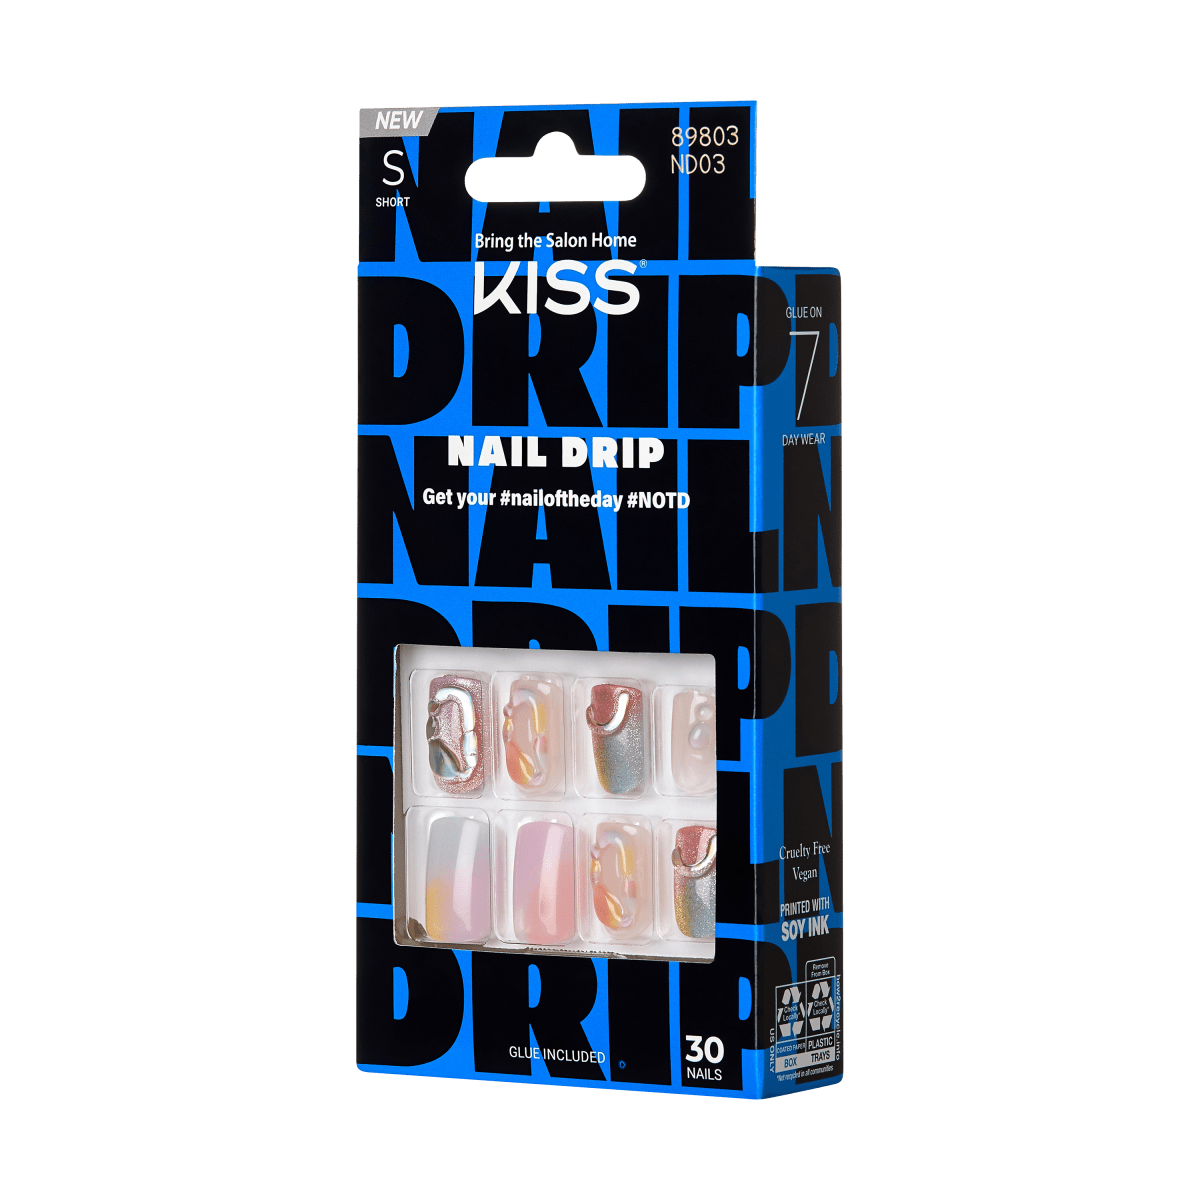 KISS Nail Drip - Drip Drip Drip